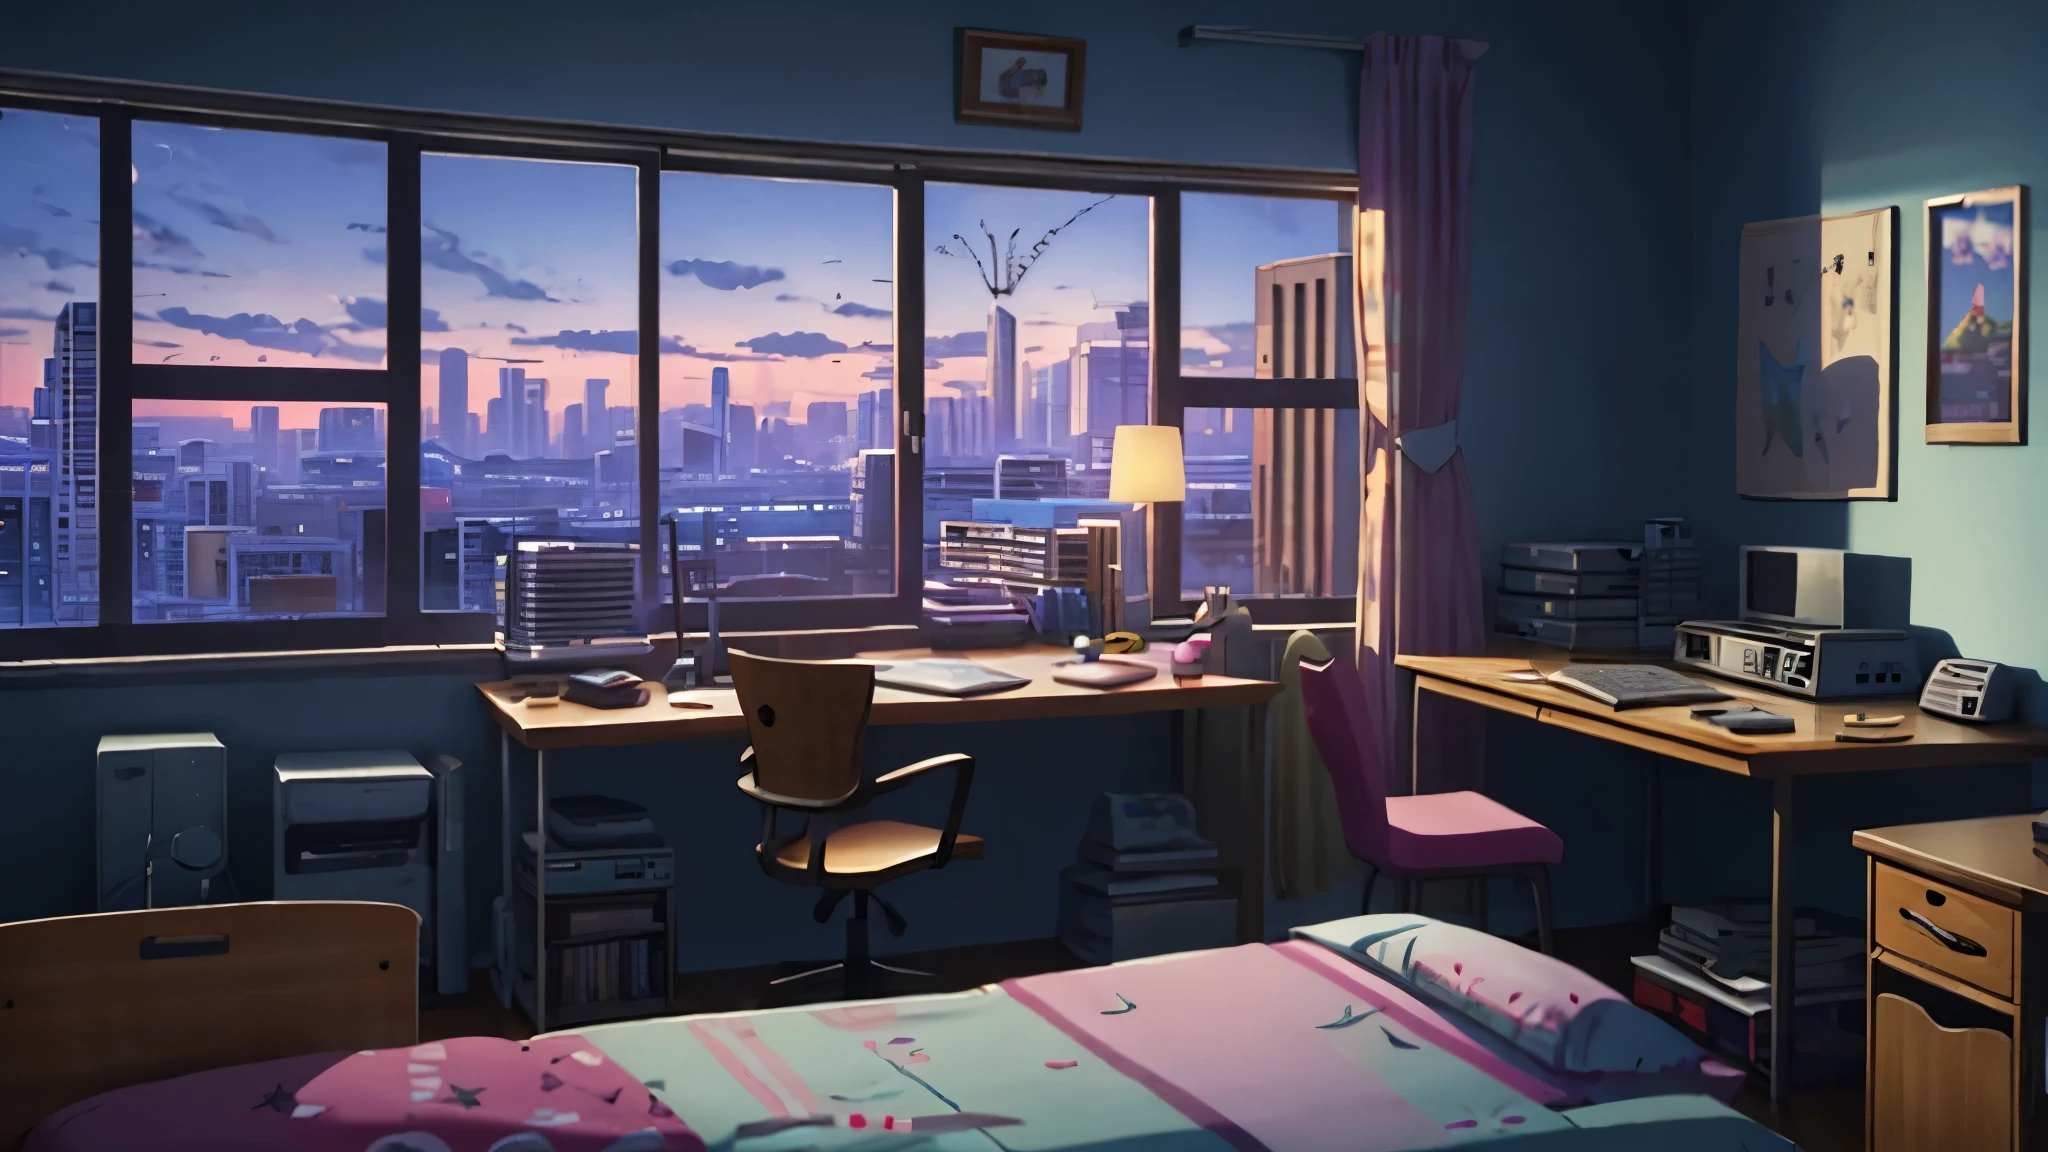 Image cinématographique d&#39;animation 3D d&#39;une pièce confortable, grandes fenêtres avec vue sur la ville la nuit, lune à crête, mélancolique, ambiance triste, le lit est défait, Bureau d&#39;ordinateur, encombré de meubles dépareillés, Les posters style otaku sur les murs et la guitare dans le coin,à la manière de Pixar, Disney, onde de vapeur, fille avec étude casque sur le bureau